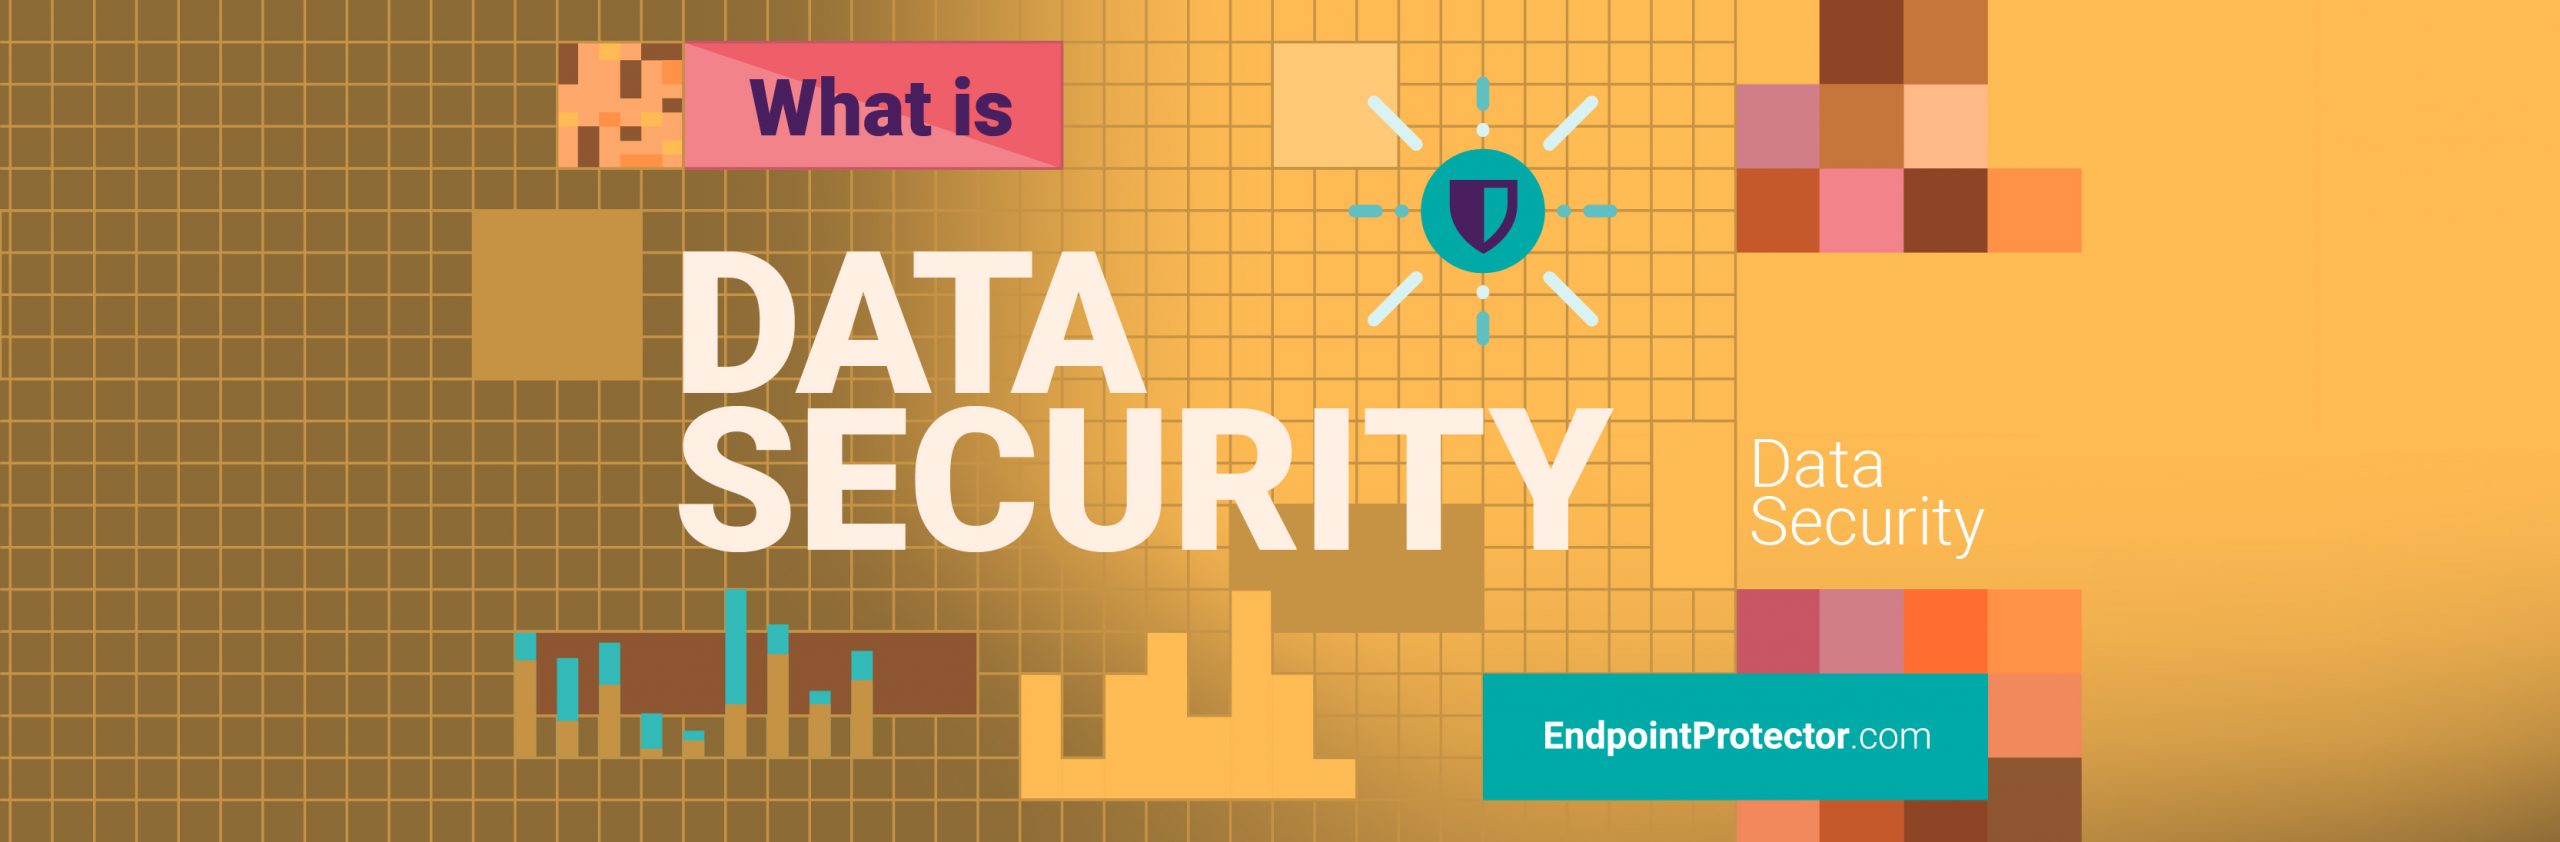 Leitfaden zur Datensicherheit: Was ist Datensicherheit, Bedrohungen und bewährte Praktiken?